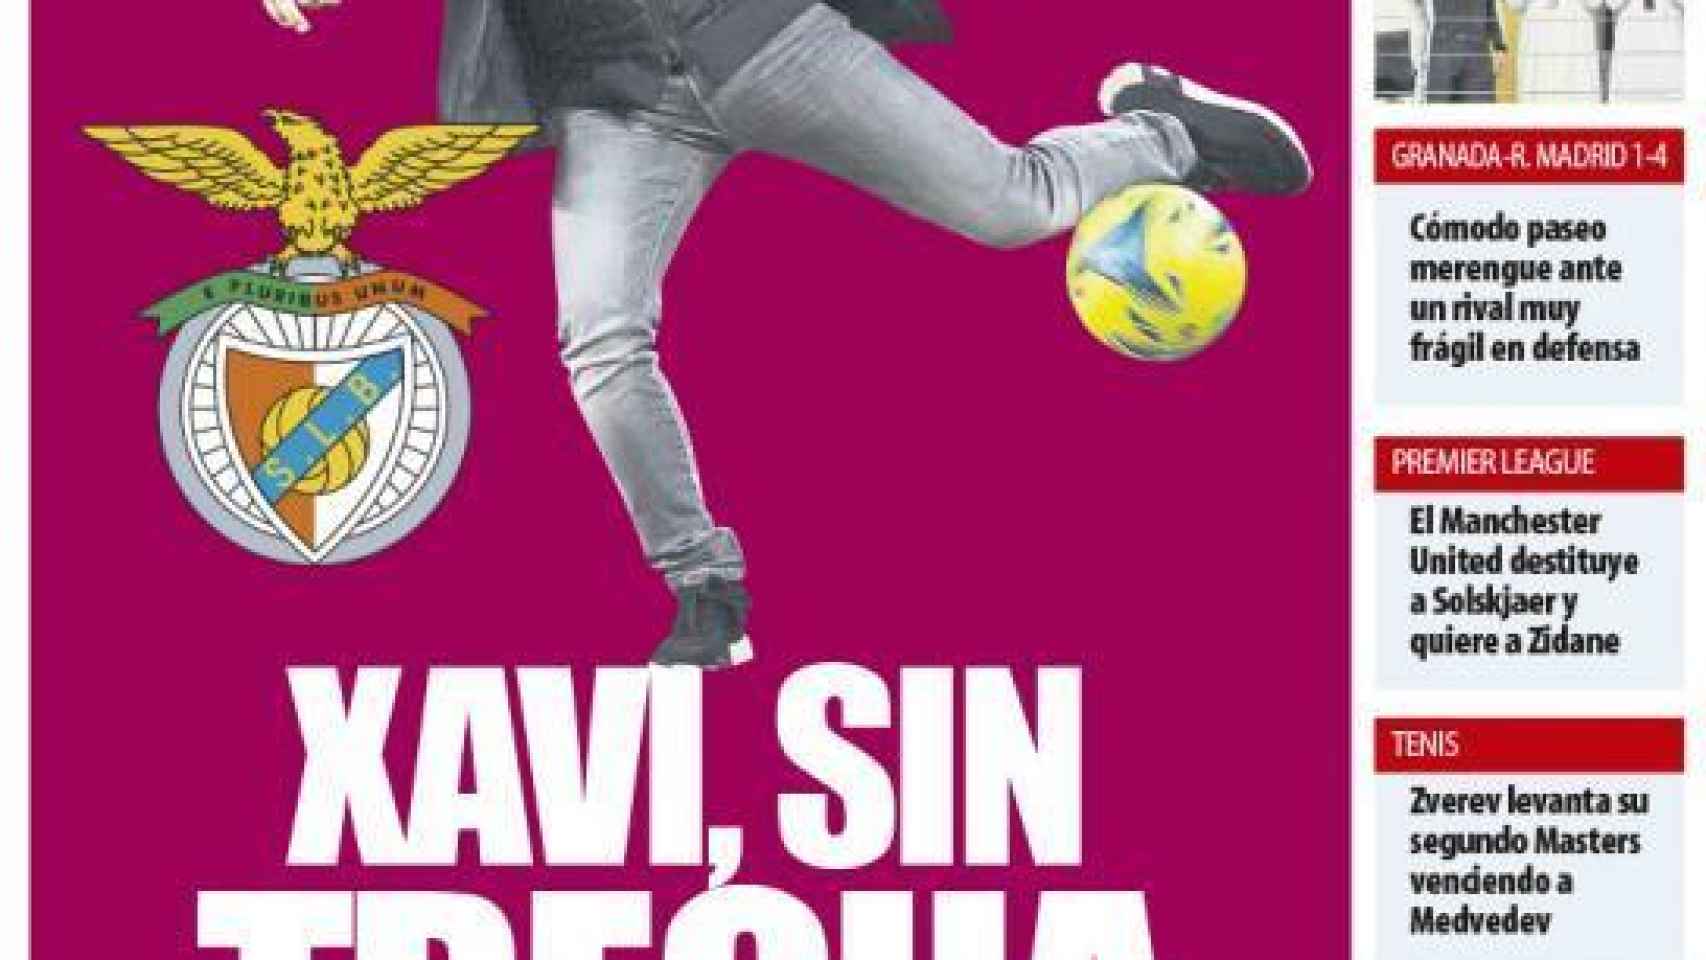 La portada del diario Mundo Deportivo (22/11/2021)